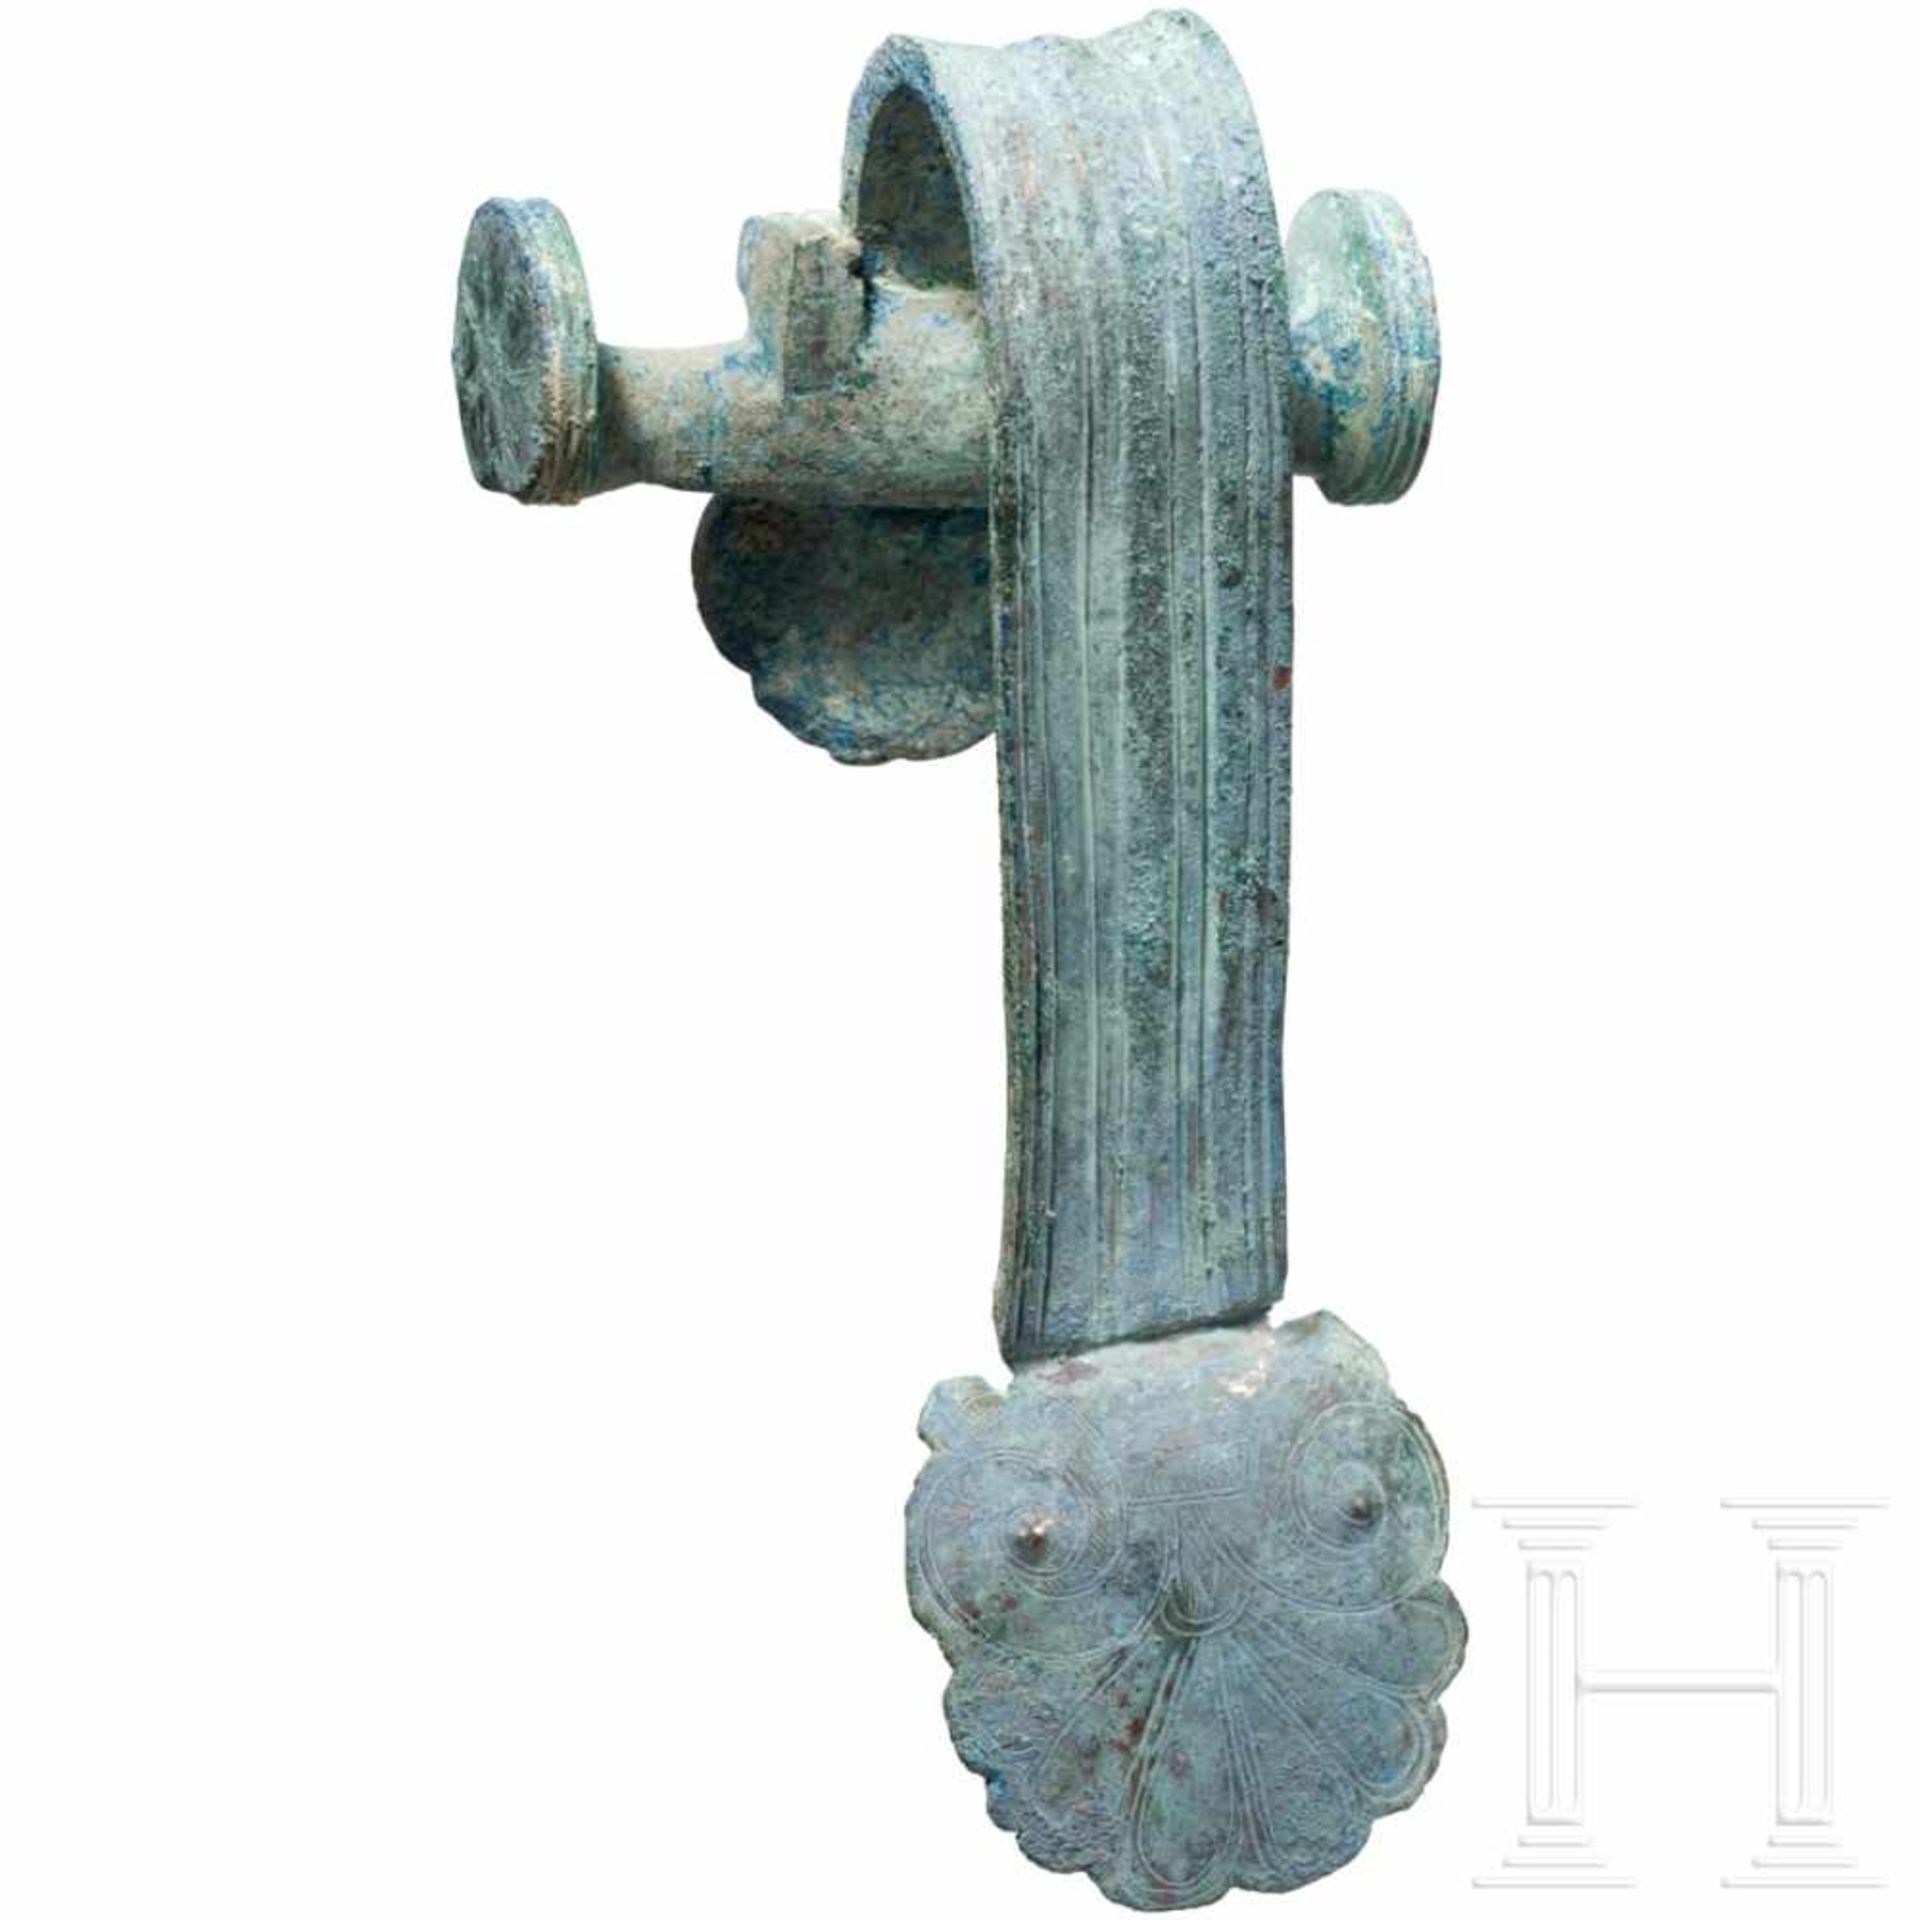 Henkelattasche eines Bronzegefäßes, Griechenland, 5. Jhdt. v. Chr. - Bild 2 aus 5